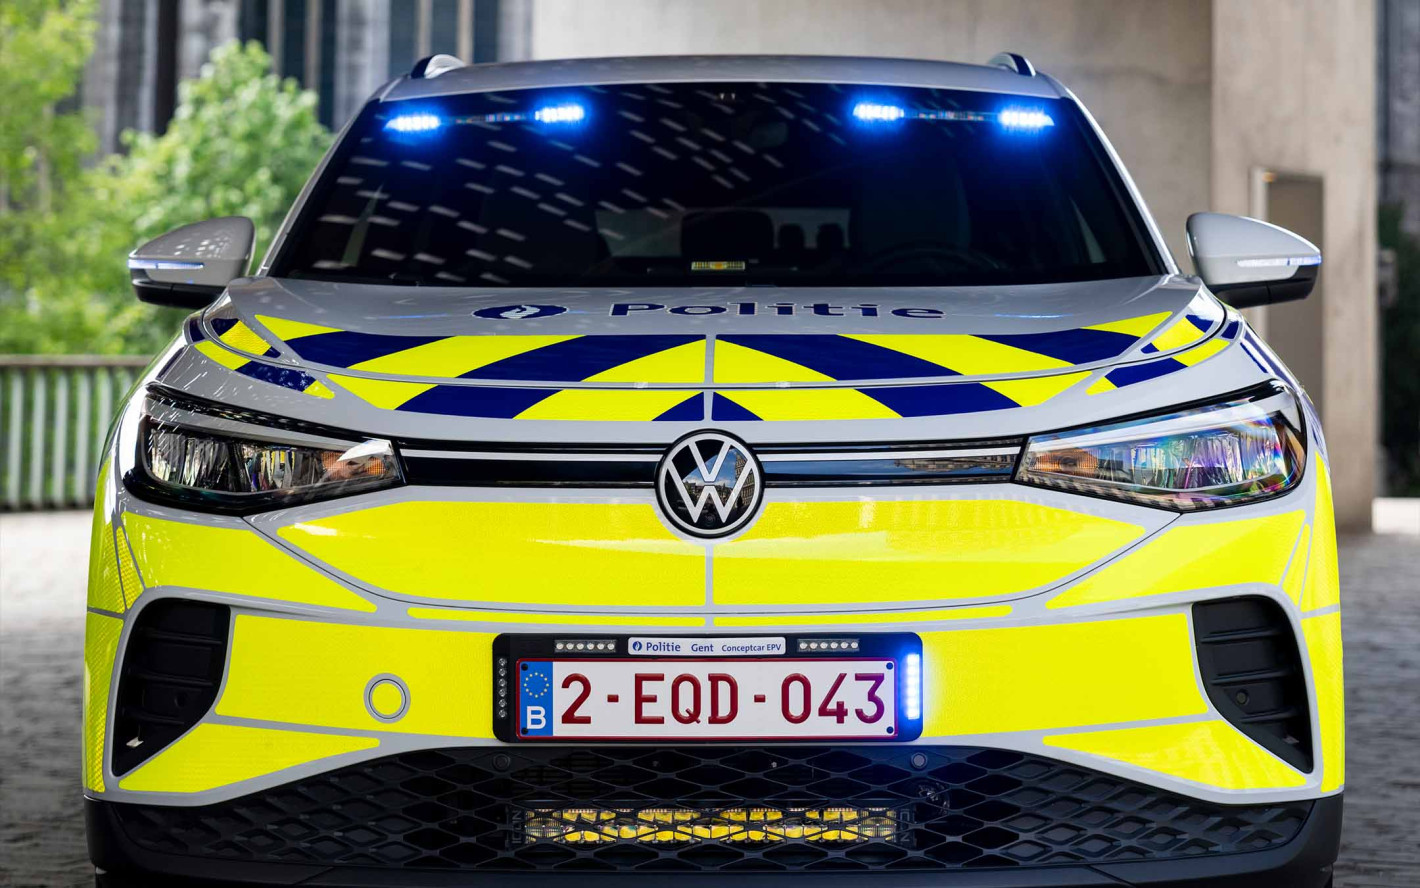 Volkswagen ID.4 police car